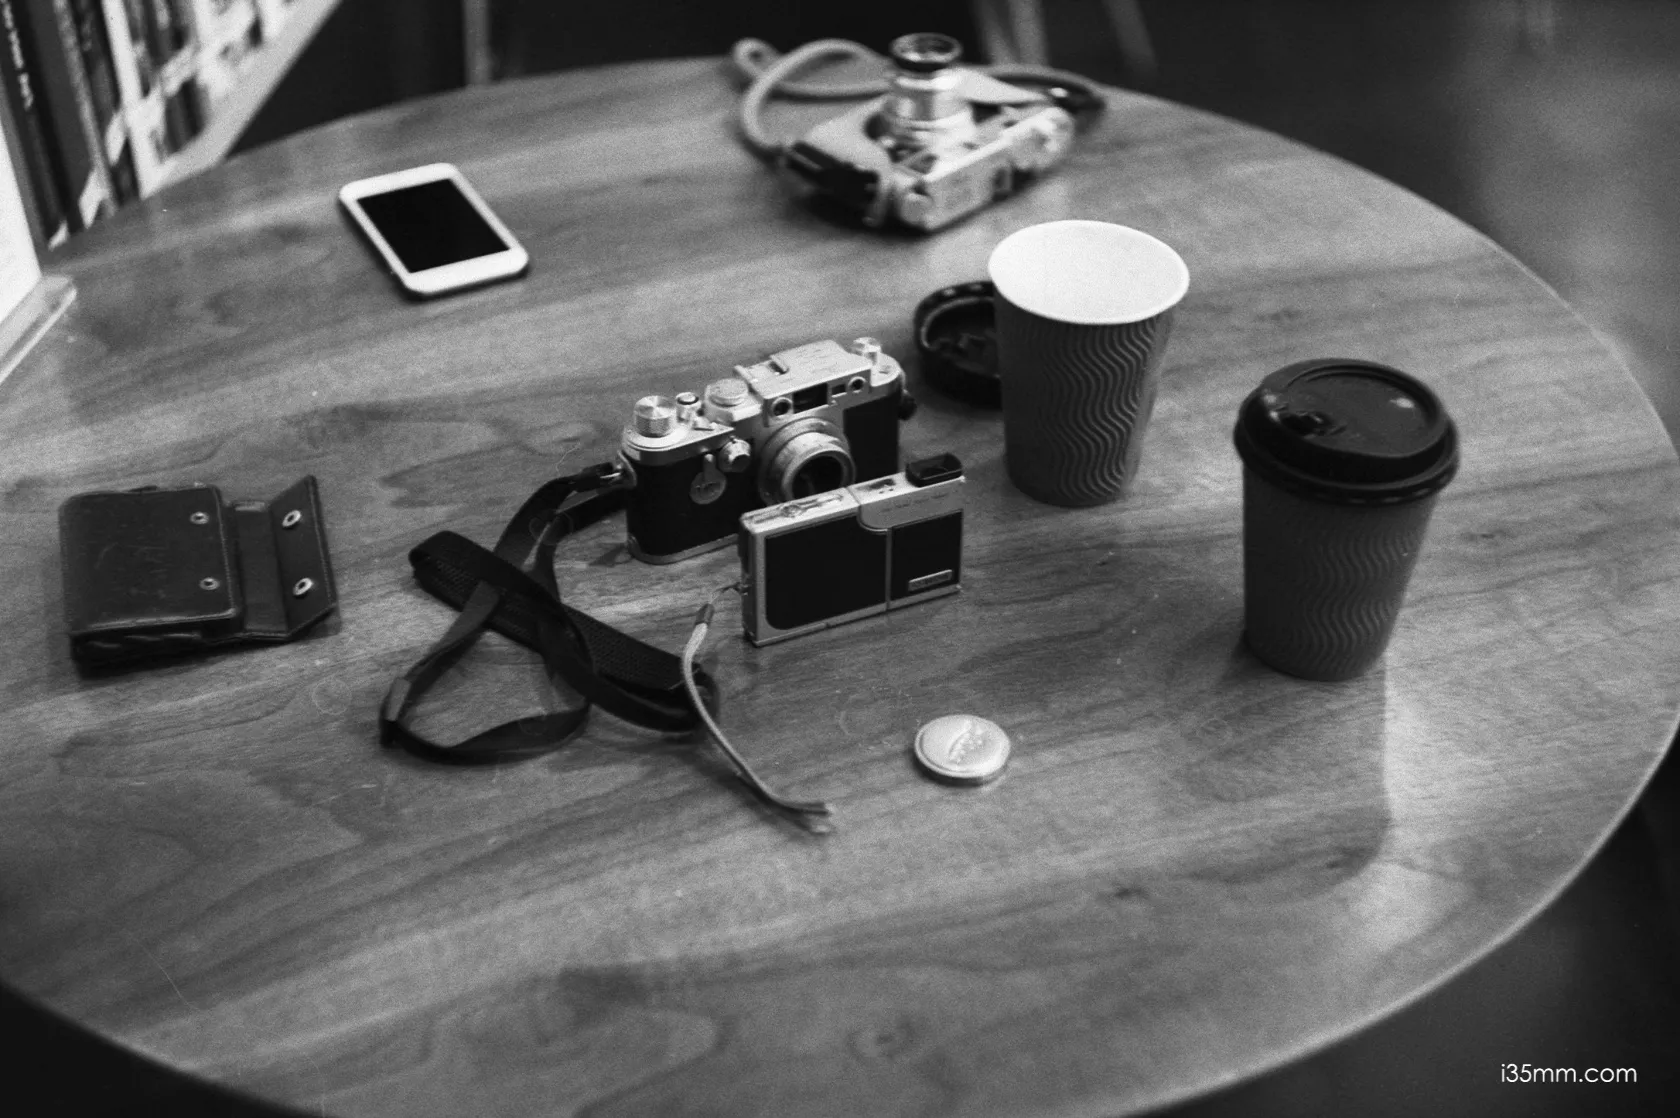 Leica 5cm f/1.5 Summarit